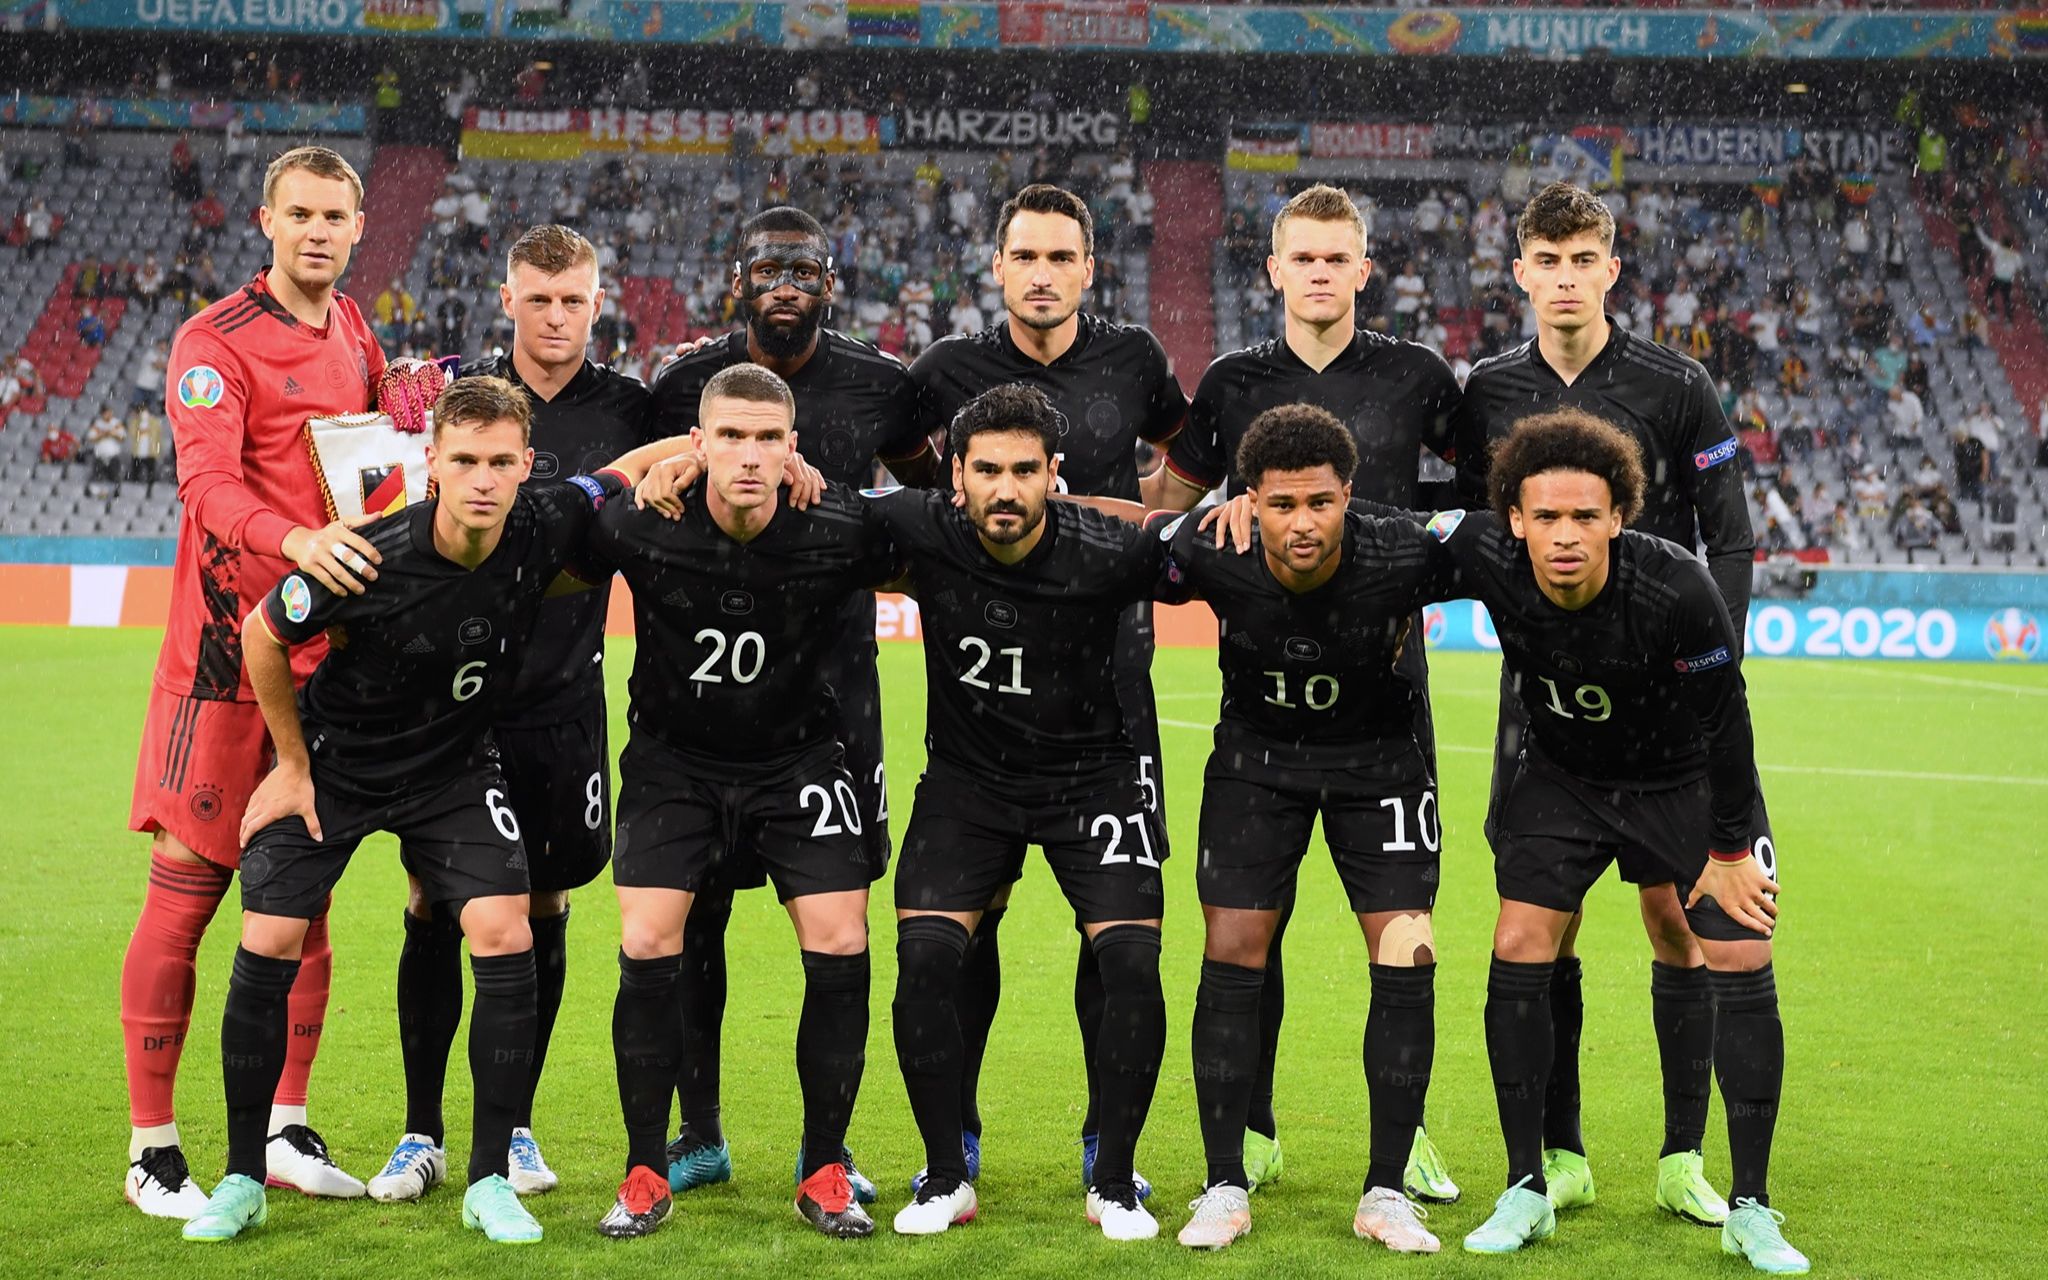 2020欧洲杯德国队名单图片